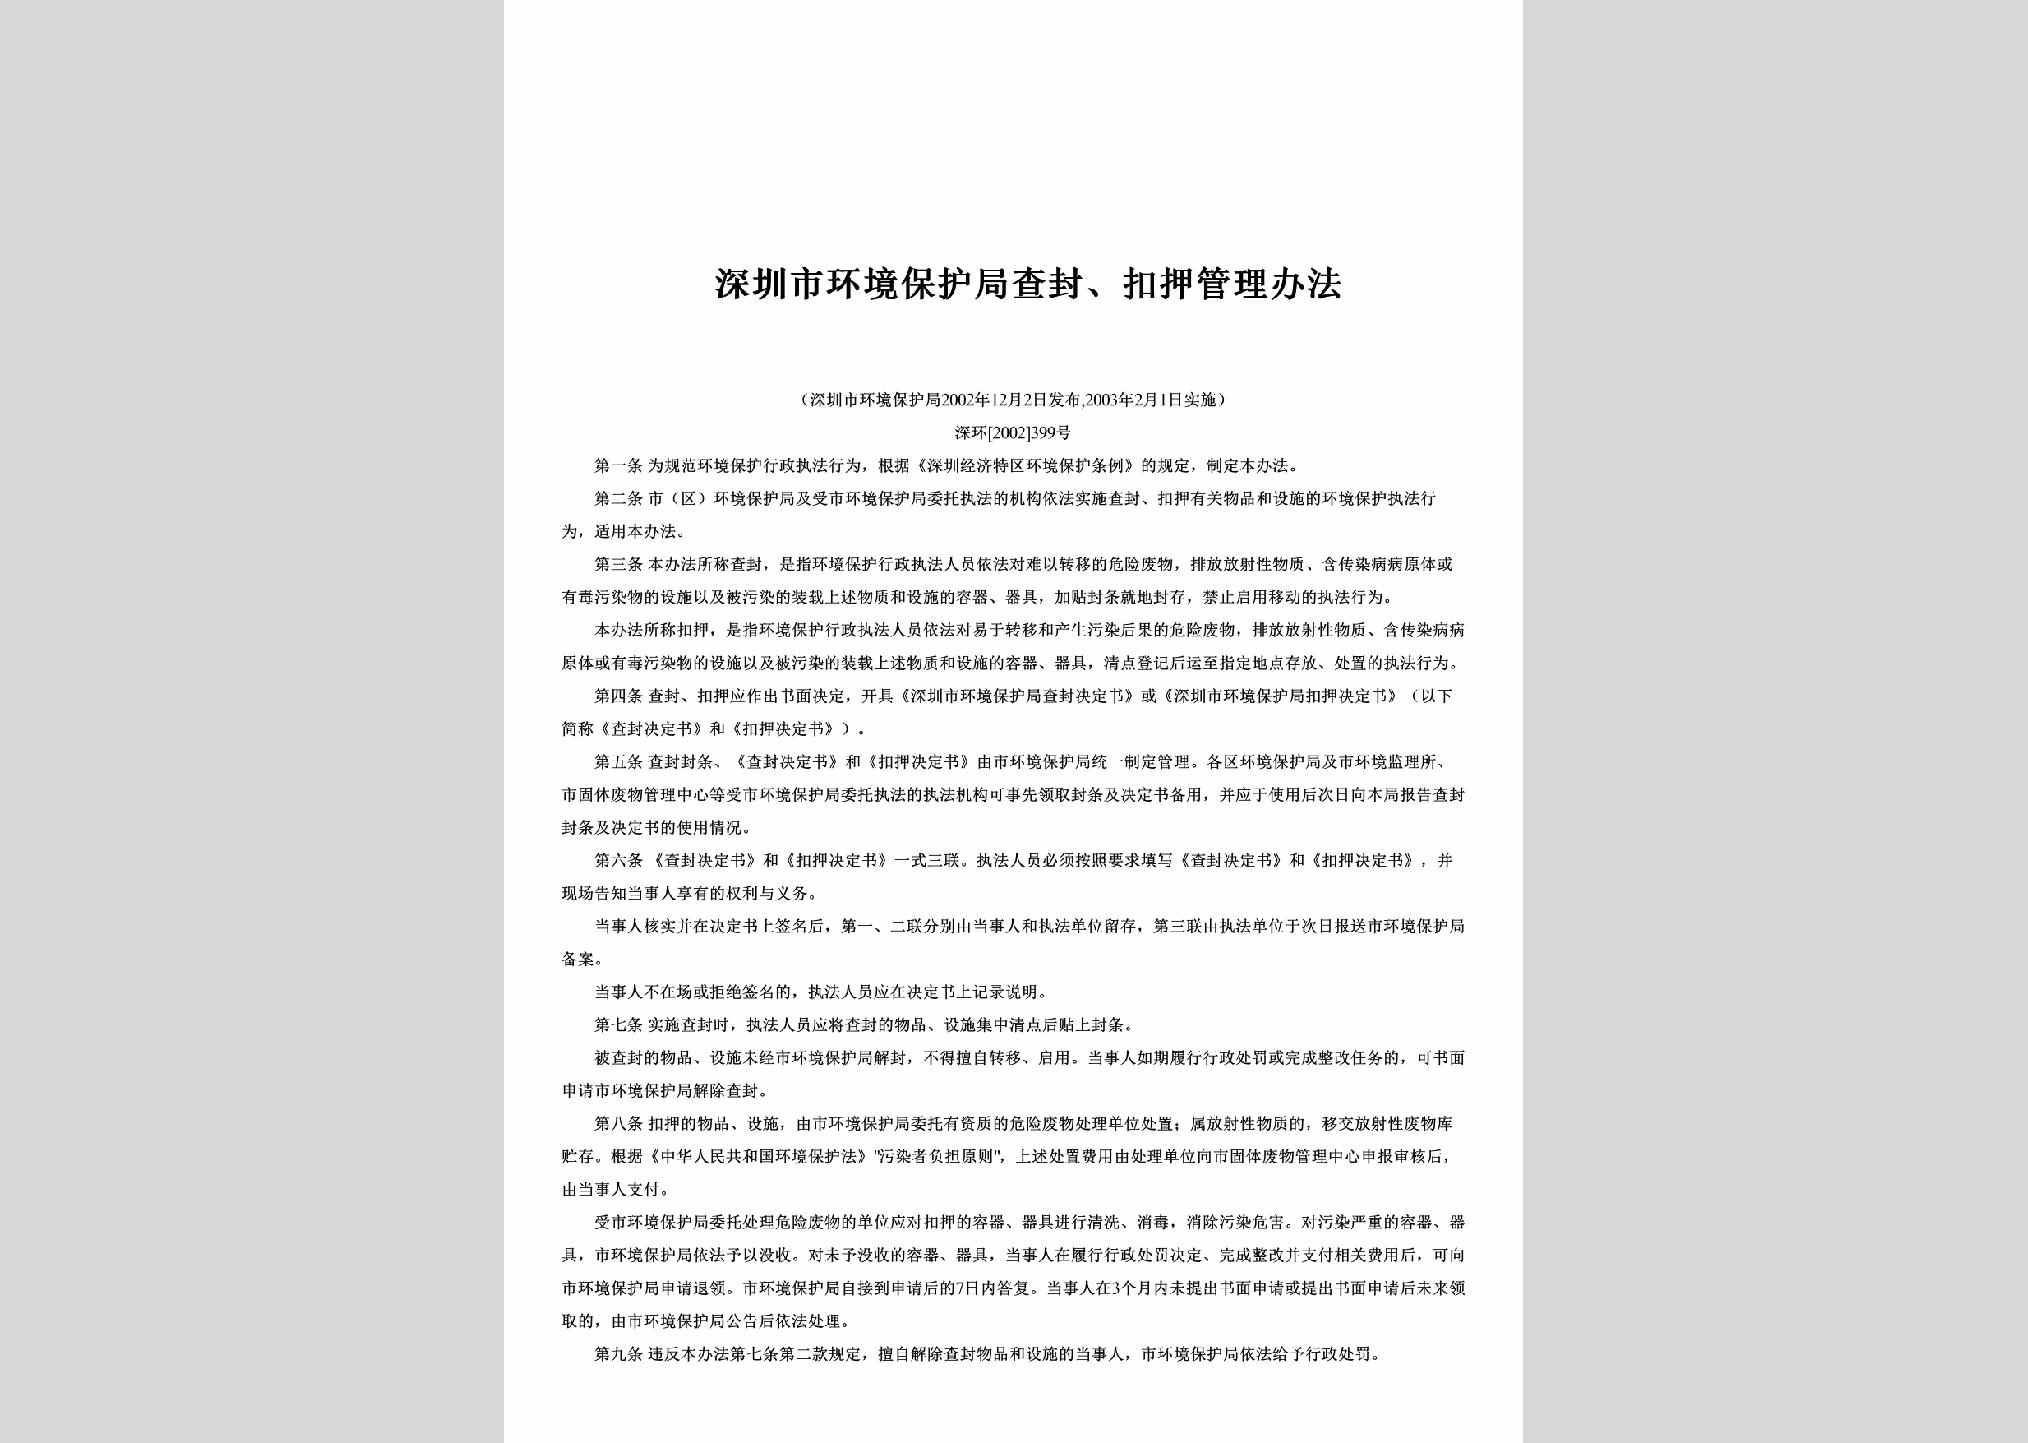 深环[2002]399号：深圳市环境保护局查封、扣押管理办法